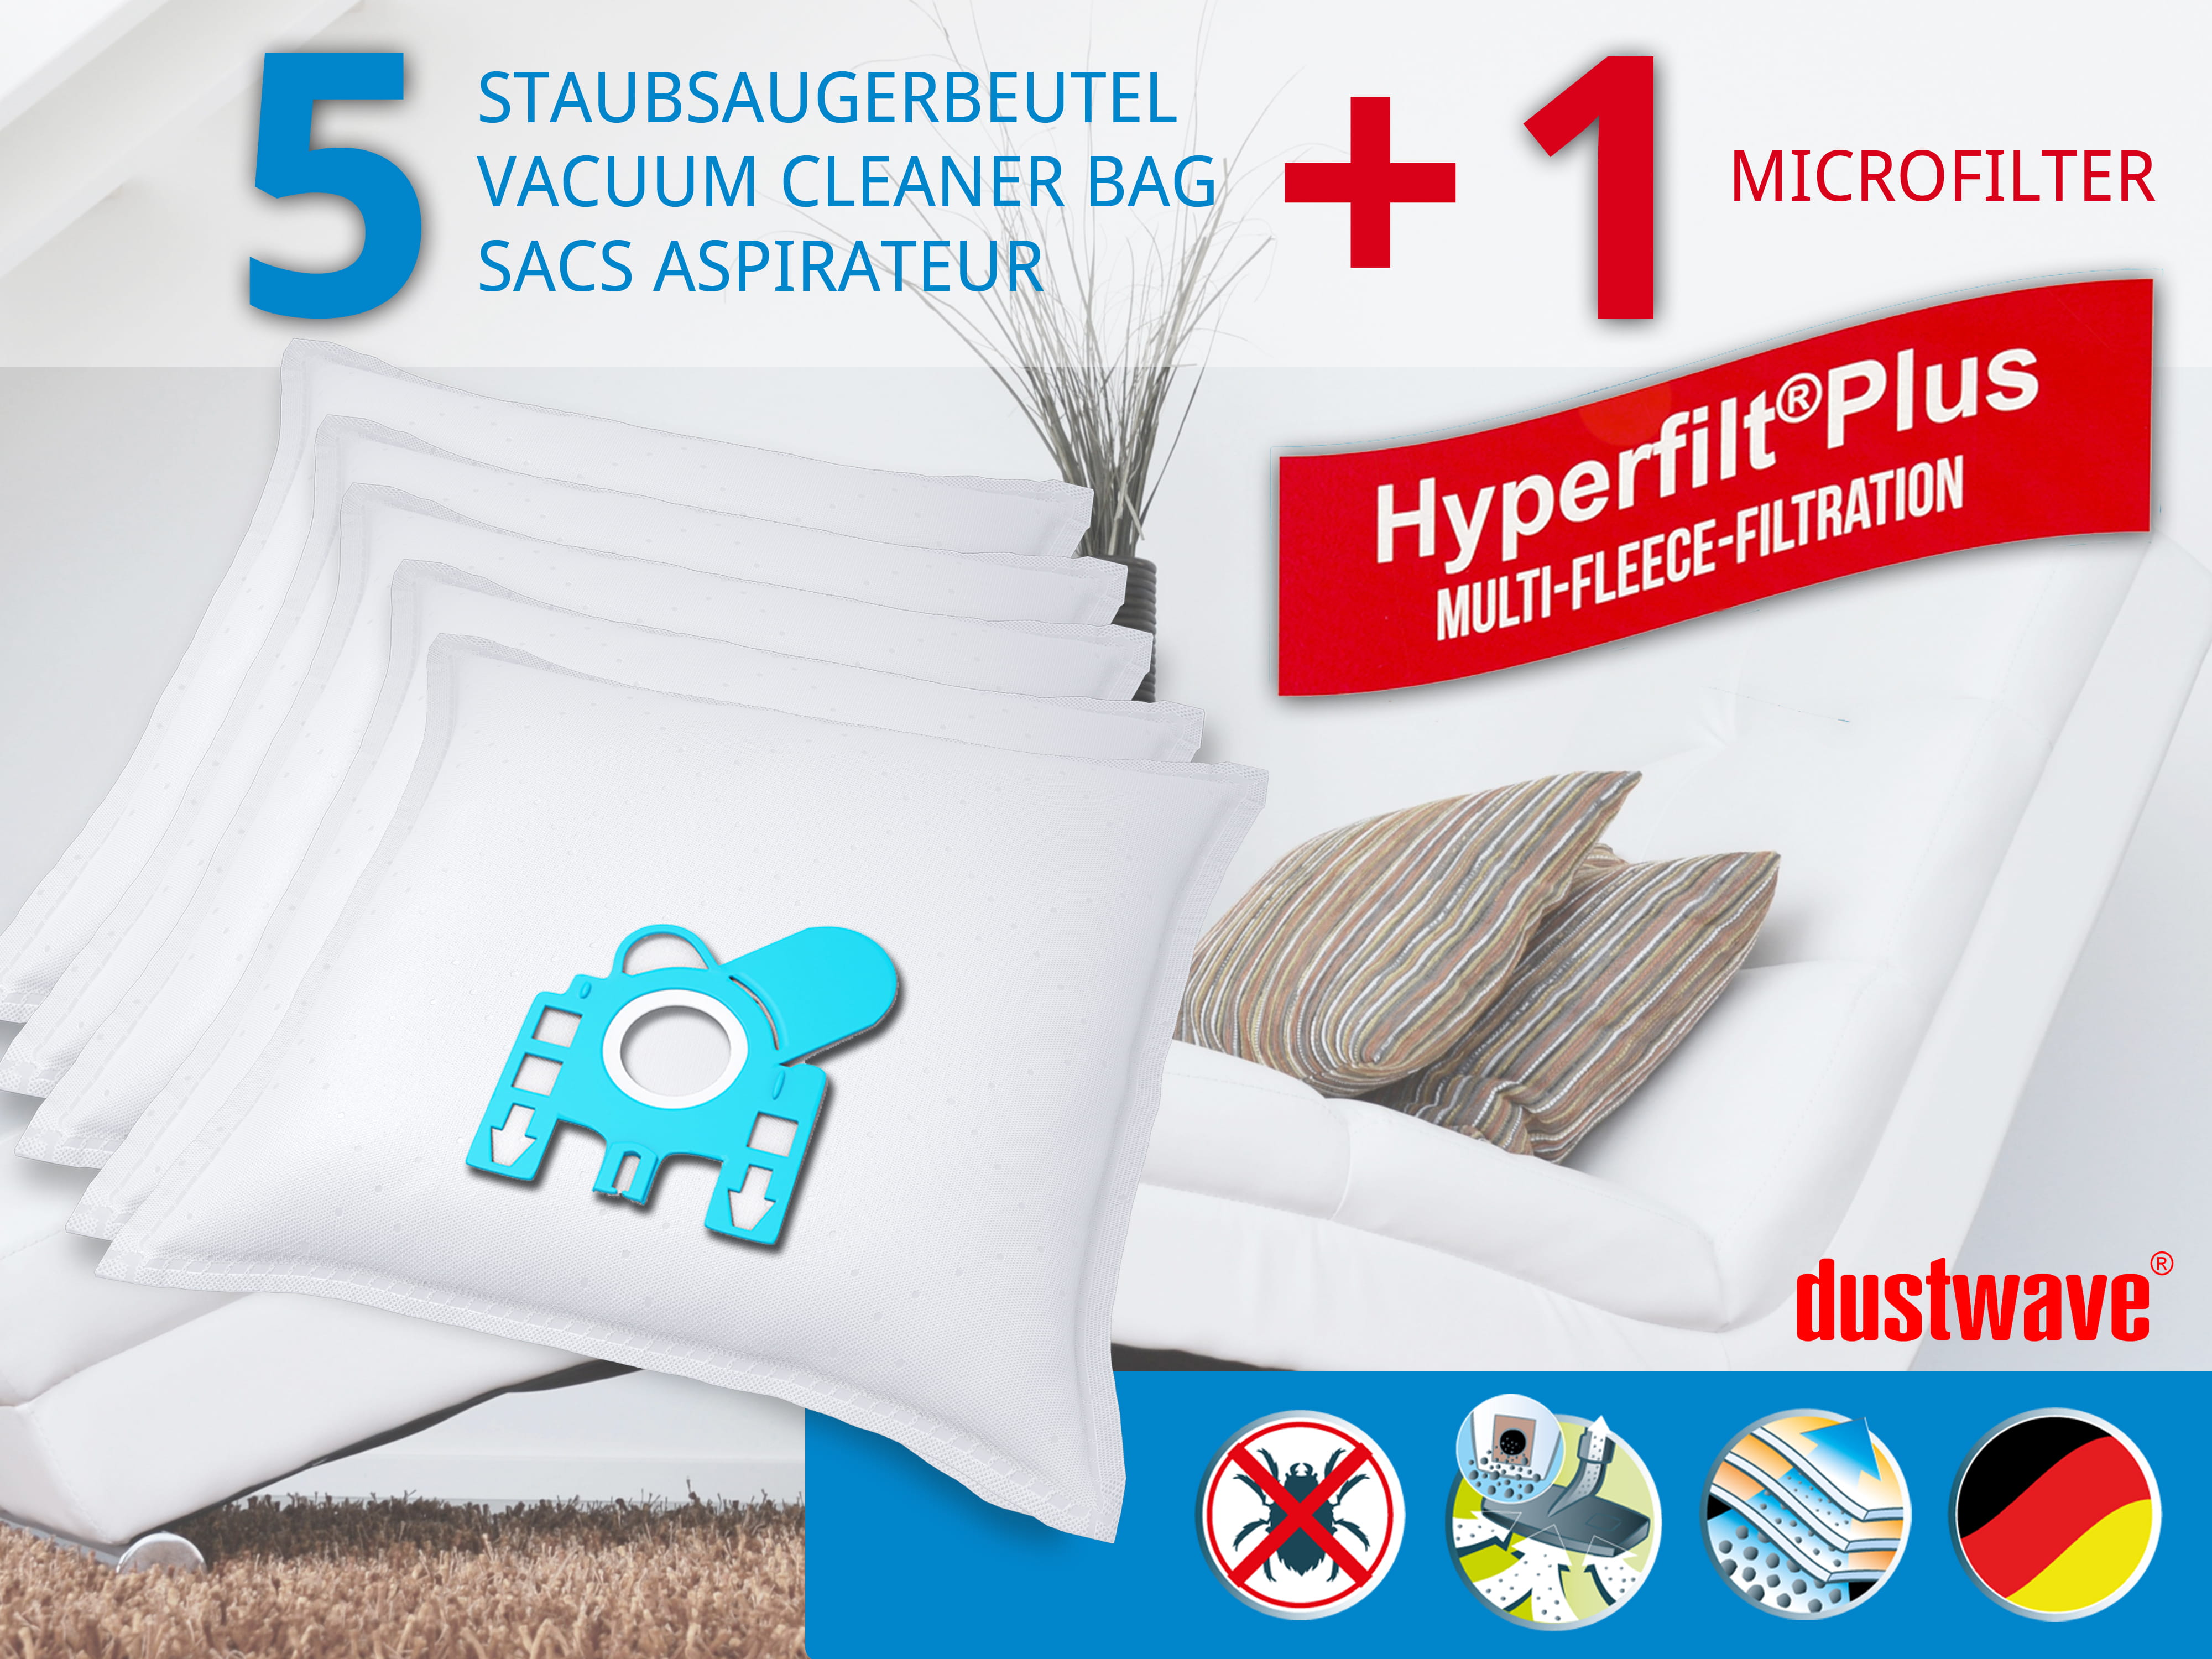 Dustwave® 5 Staubsaugerbeutel für Miele Power 1800 - hocheffizient, mehrlagiges Mikrovlies mit Hygieneverschluss - Made in Germany